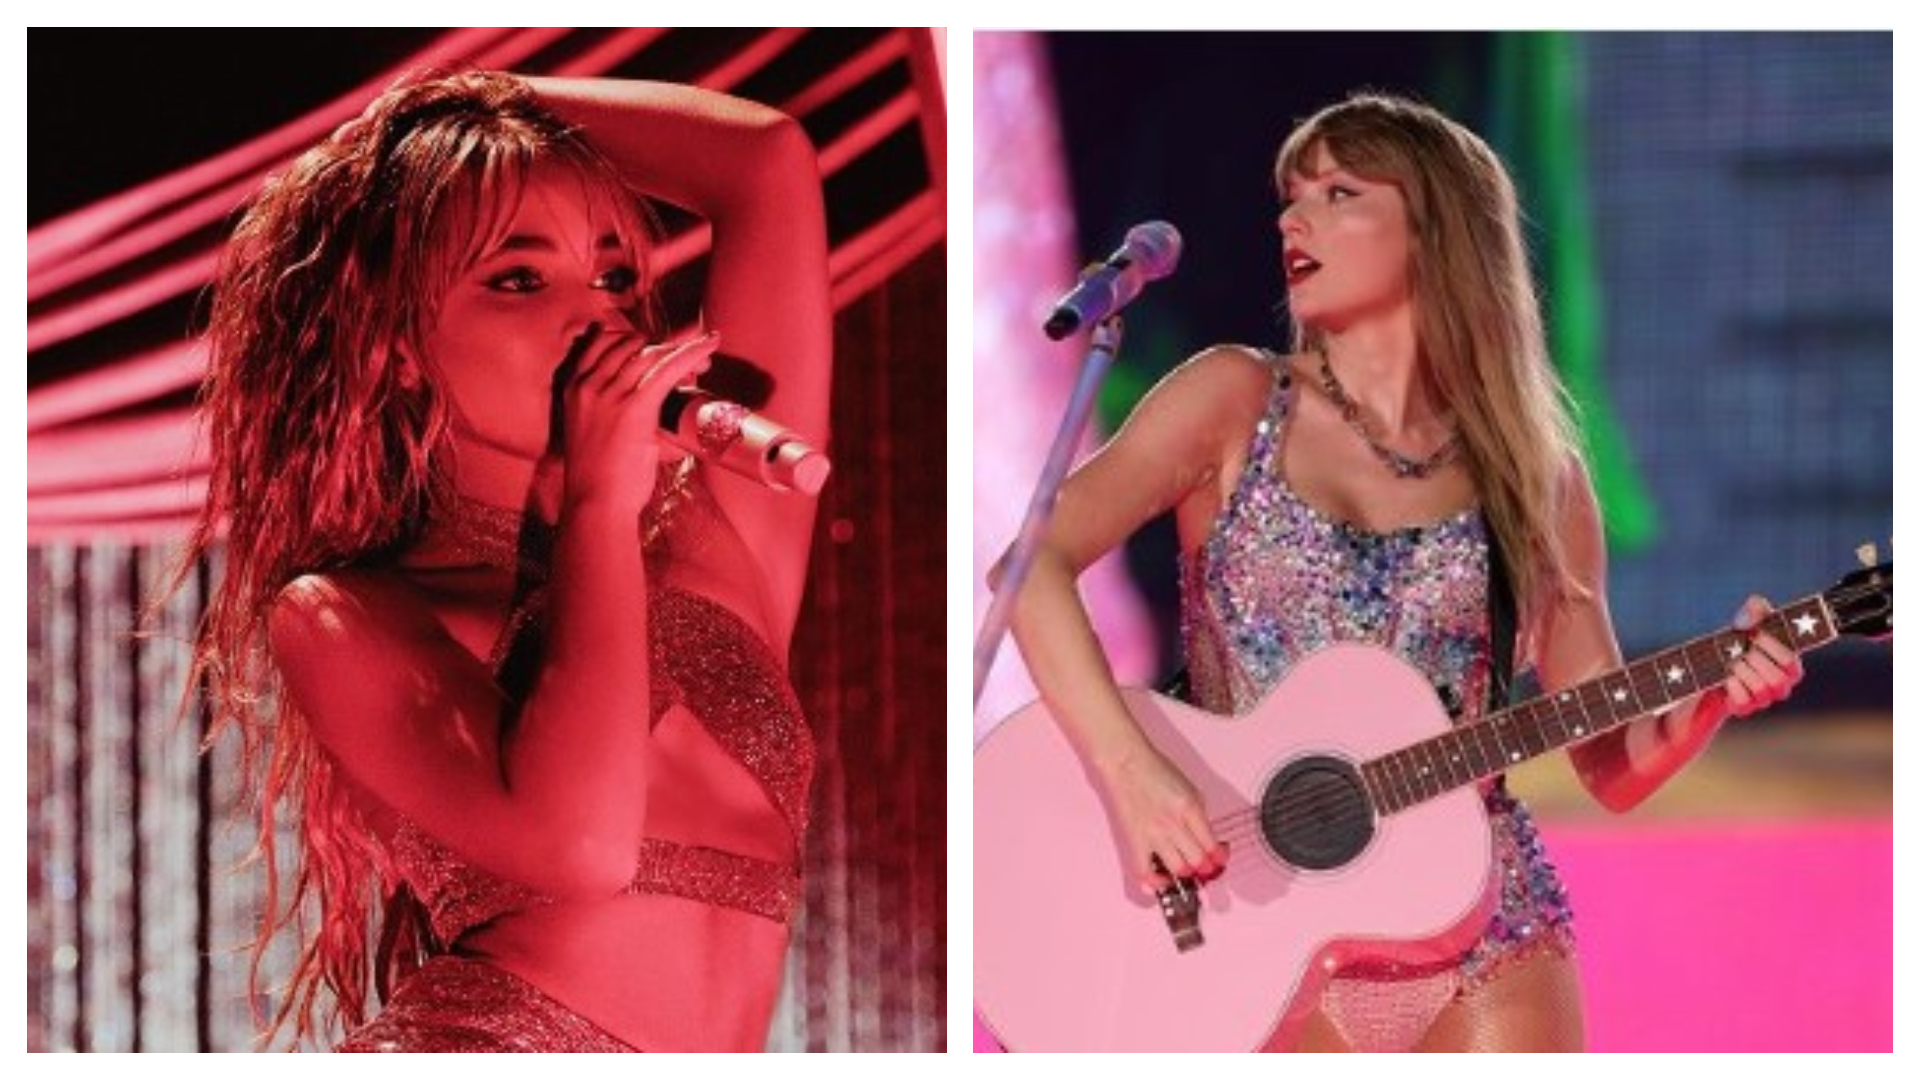 Quién es Sabrina Carpenter la cantante que abrirá el concierto de Taylor Swift en México